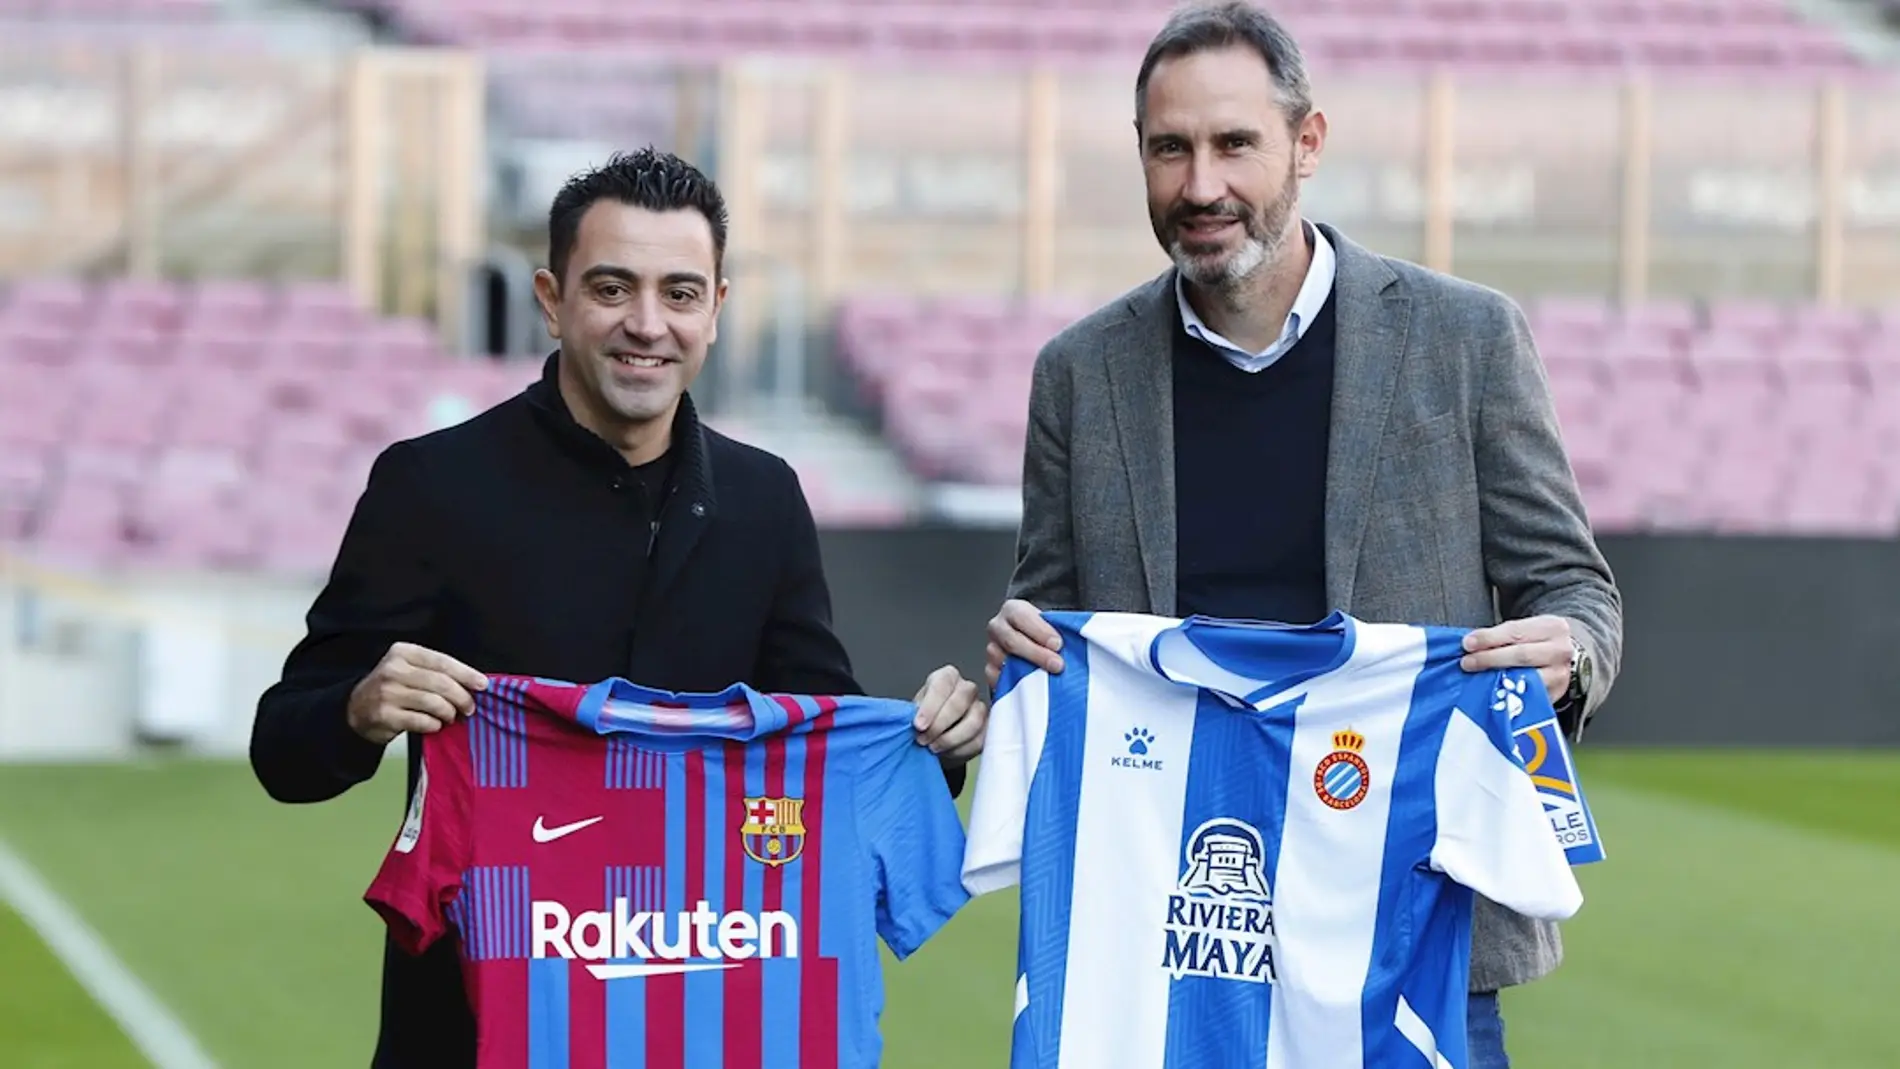 Xavi Hernández y Vicente Moreno posan en la previa del derbi entre Barcelona y Espanyol